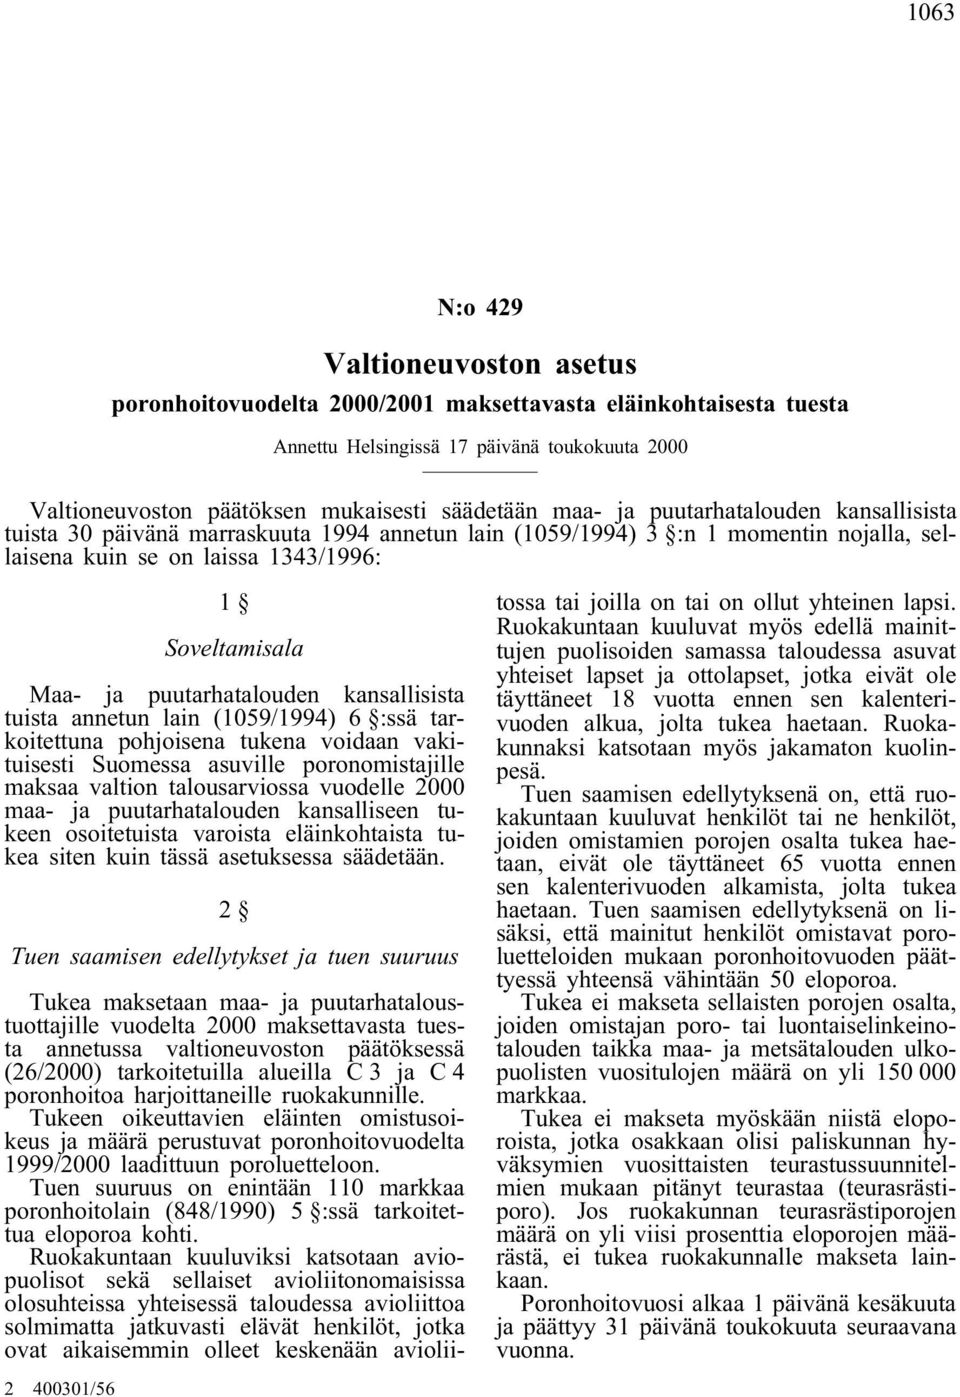 puutarhatalouden kansallisista tuista annetun lain (1059/1994) 6 :ssä tarkoitettuna pohjoisena tukena voidaan vakituisesti Suomessa asuville poronomistajille maksaa valtion talousarviossa vuodelle